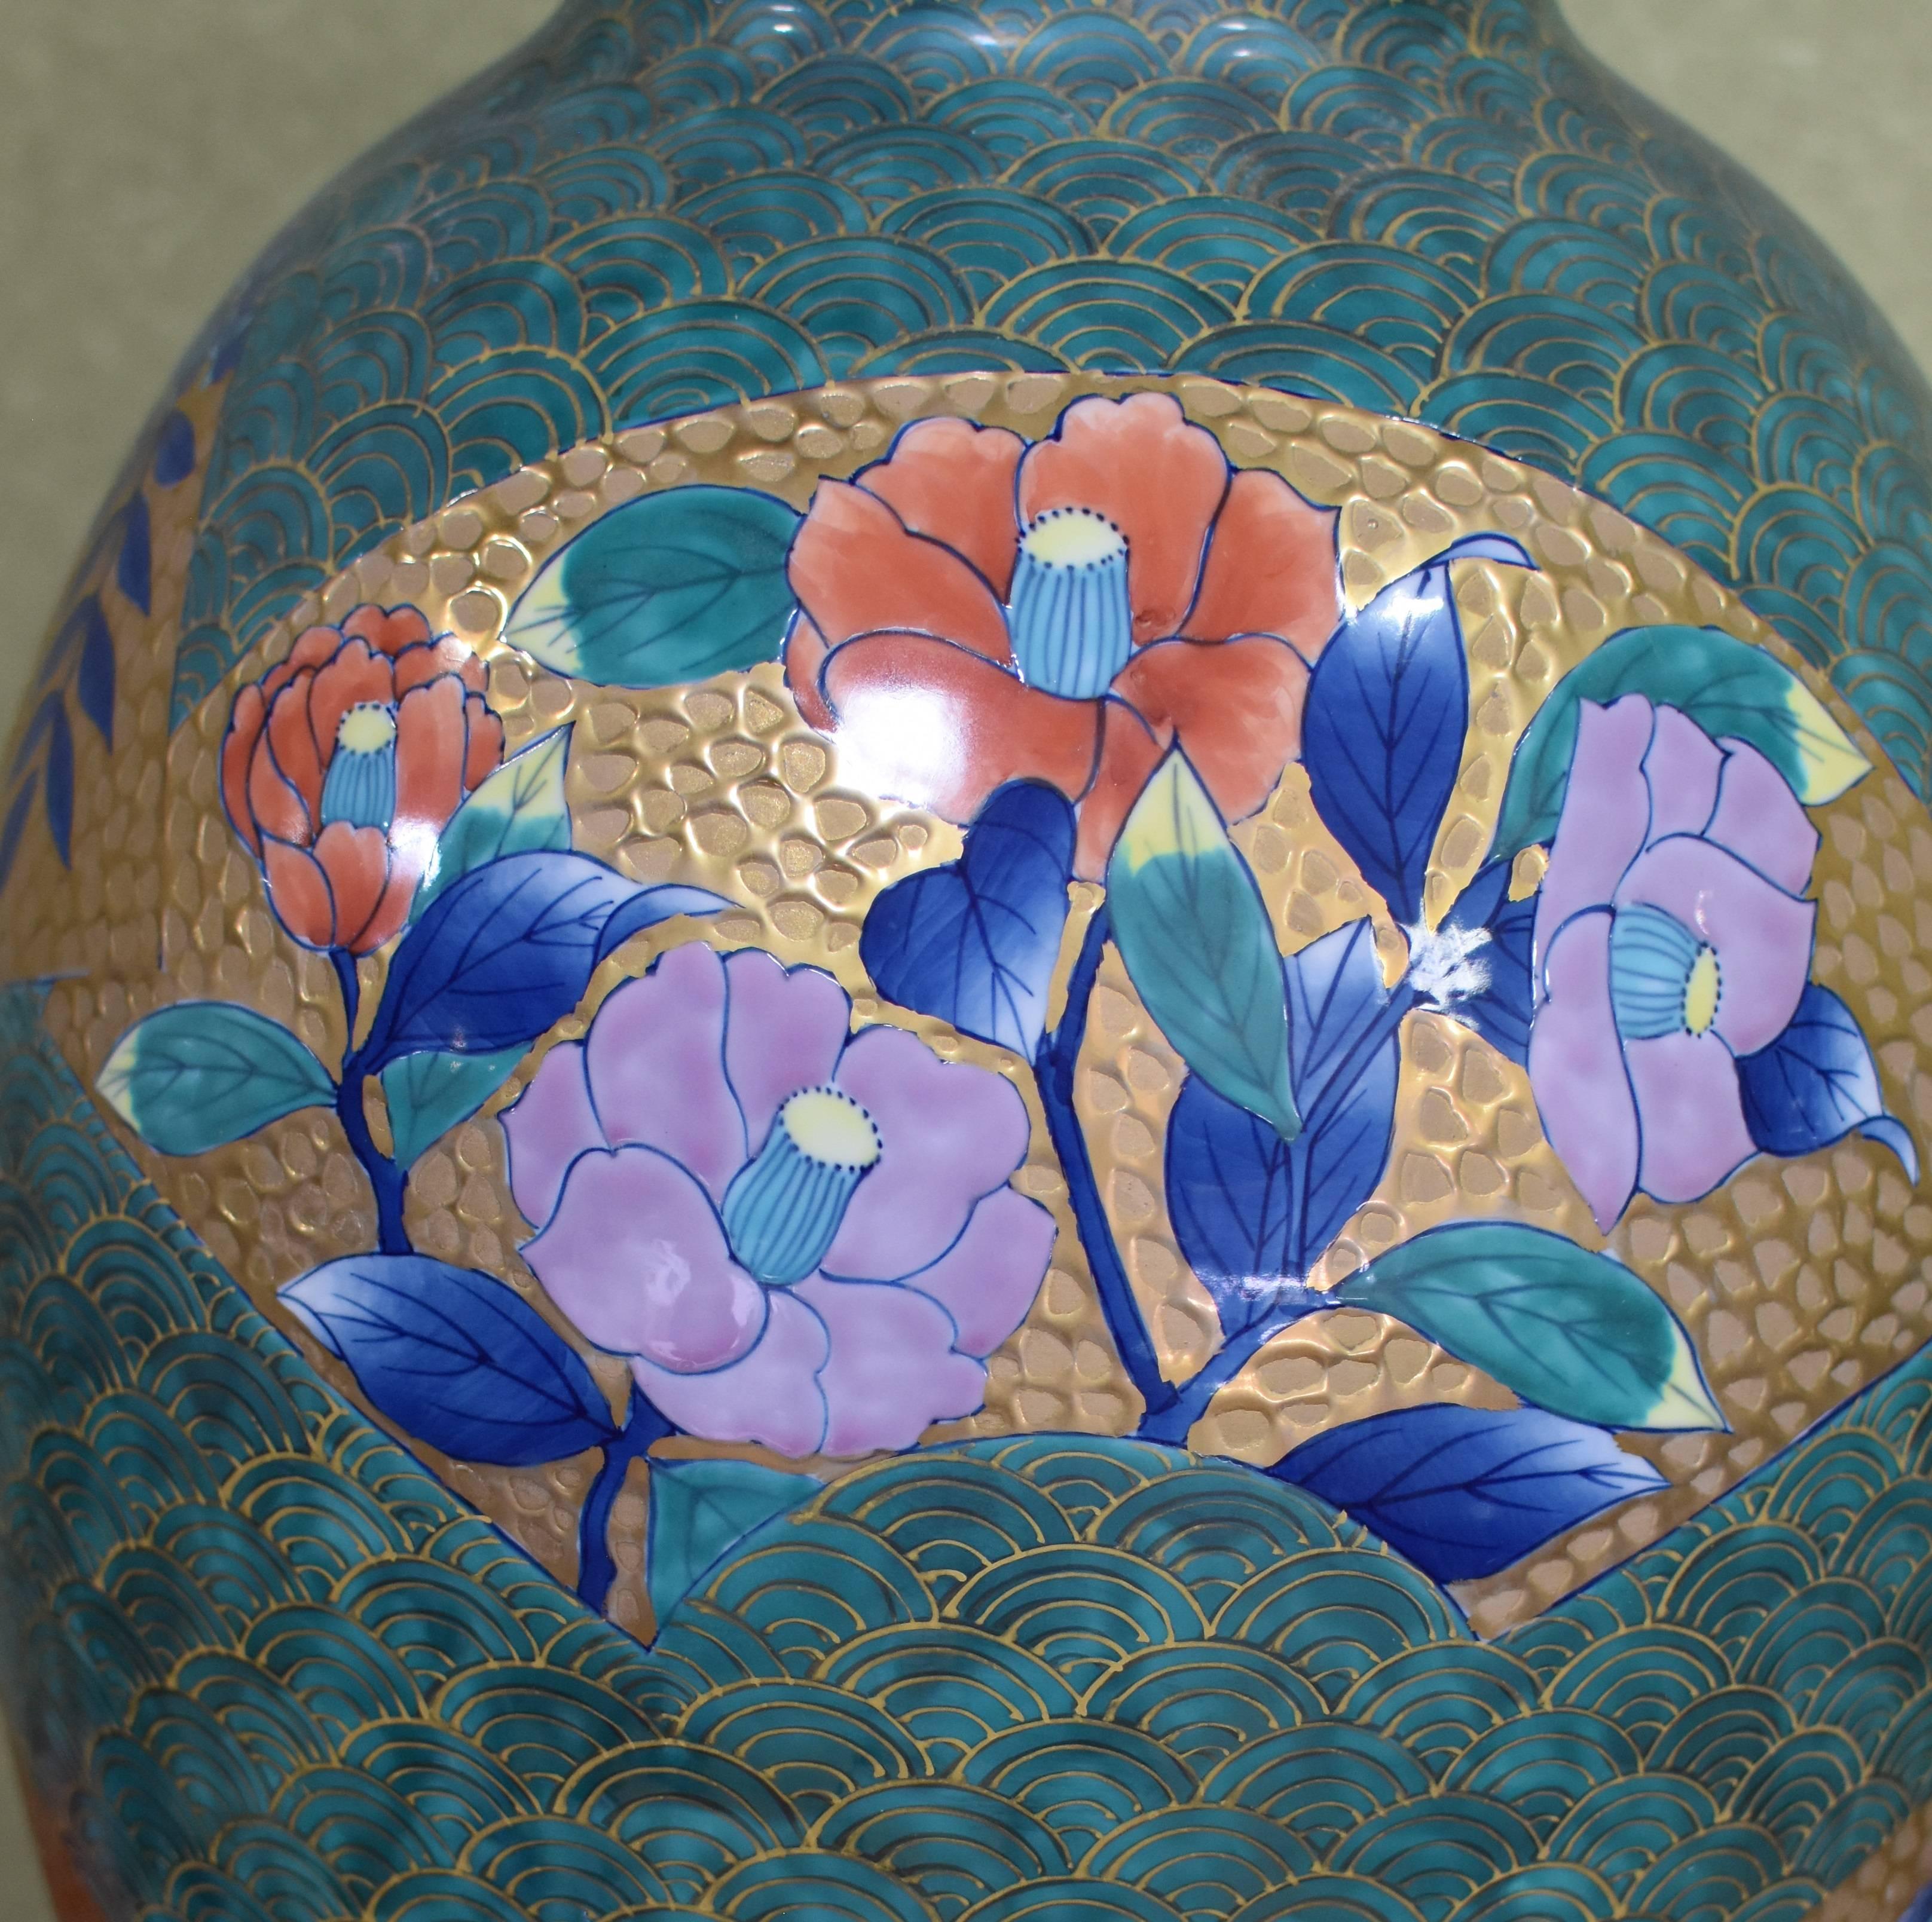  Large Green Gold Blue Porcelain Vase by Japanese  Master Artist 1